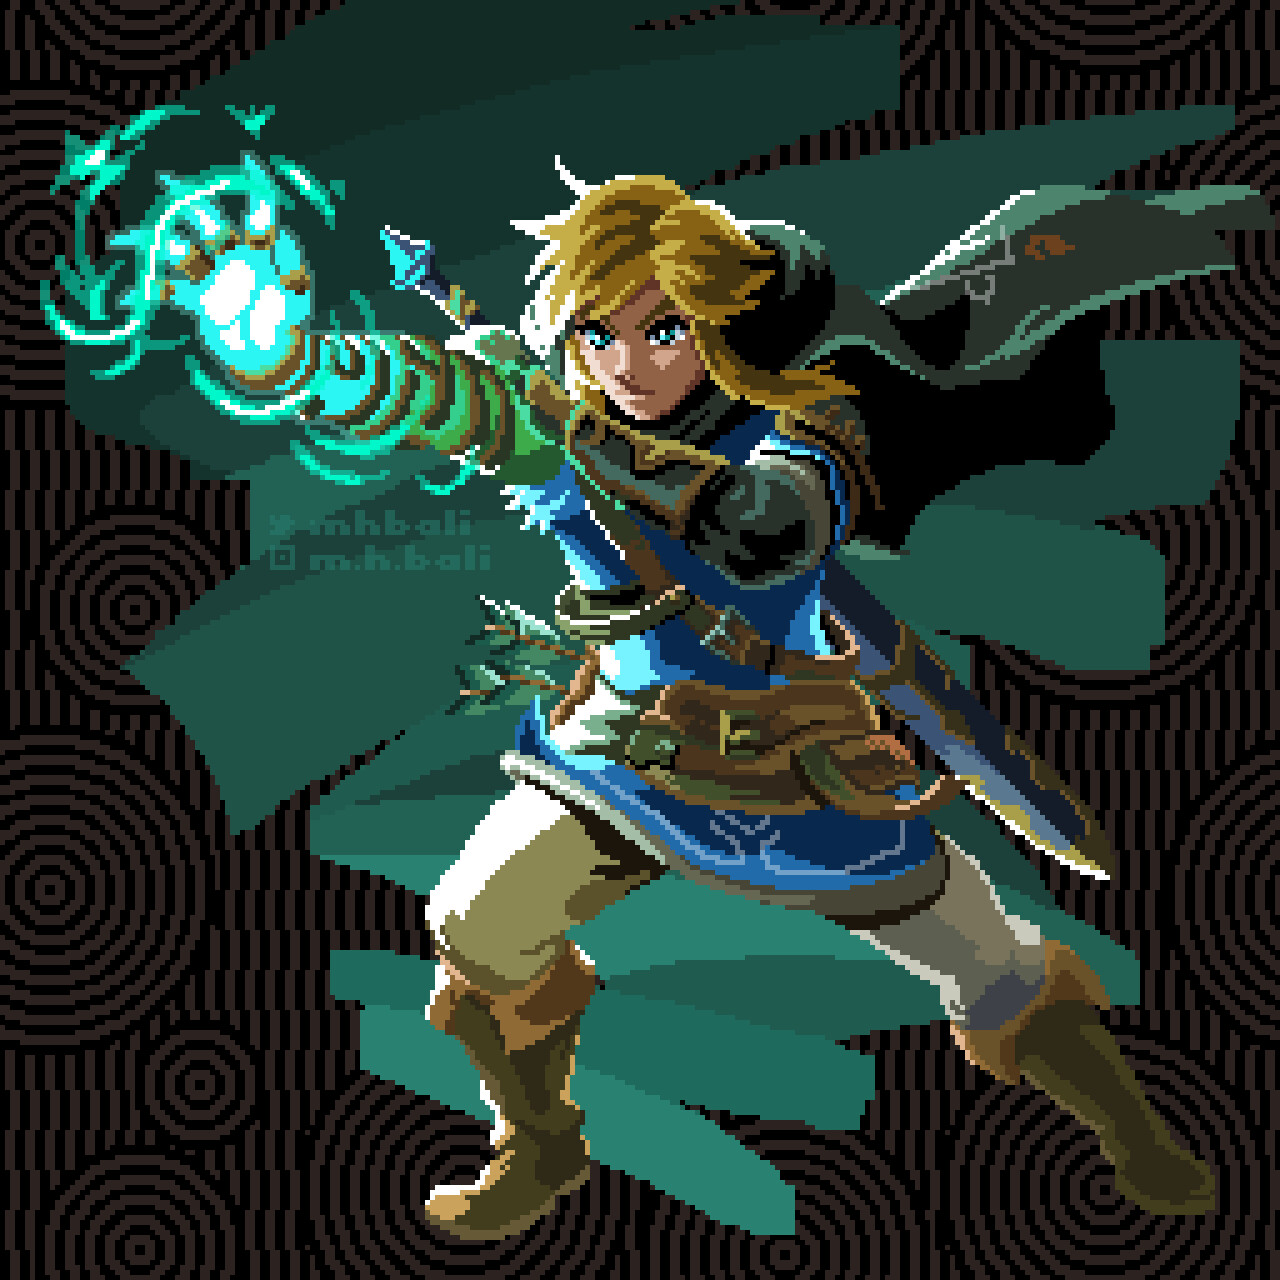 Legend of Zelda TOTK Link Bead Art by KamaPixel on DeviantArt